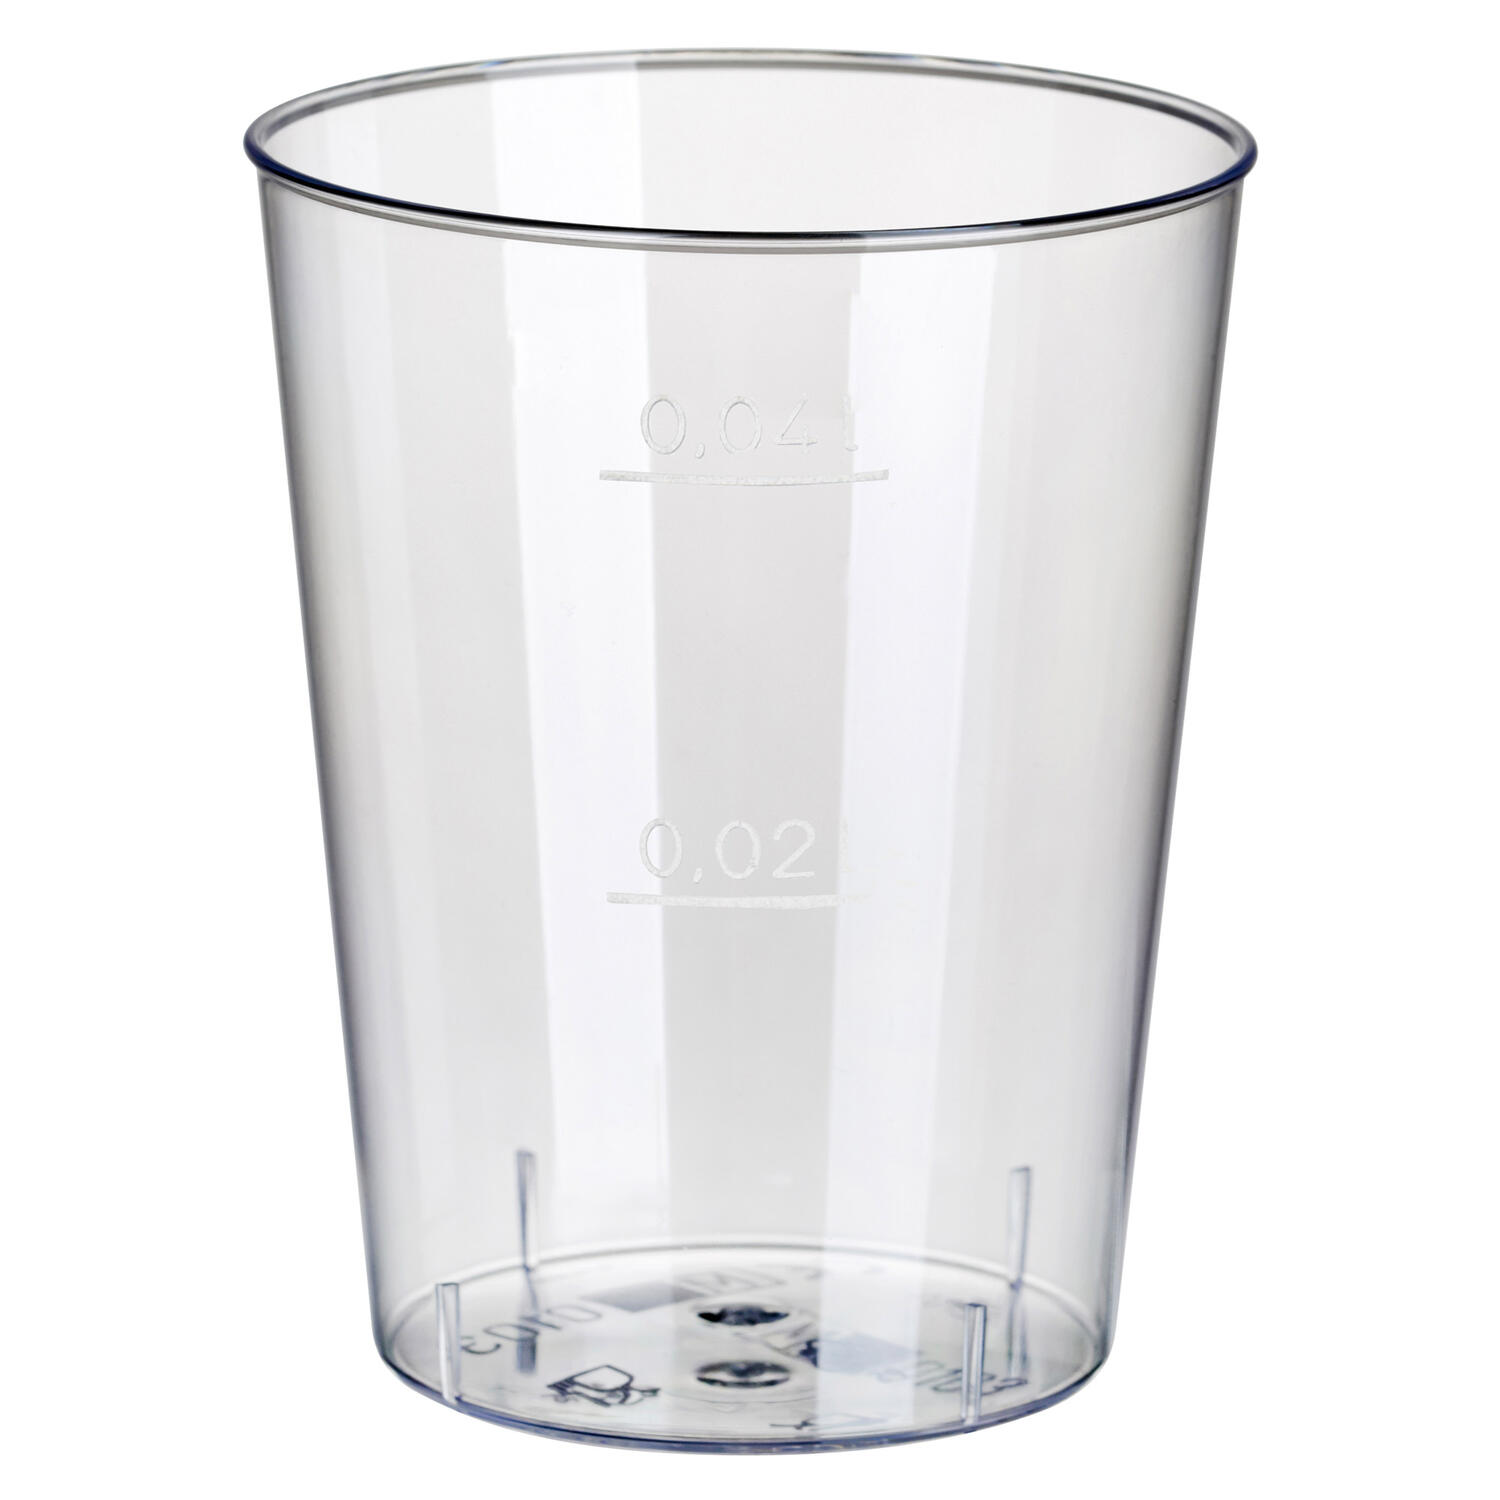 Einweg-Schnapsglas 4cl,  PS mit Eichstrich bei 2cl und 4cl, transparent, 40 Stk.